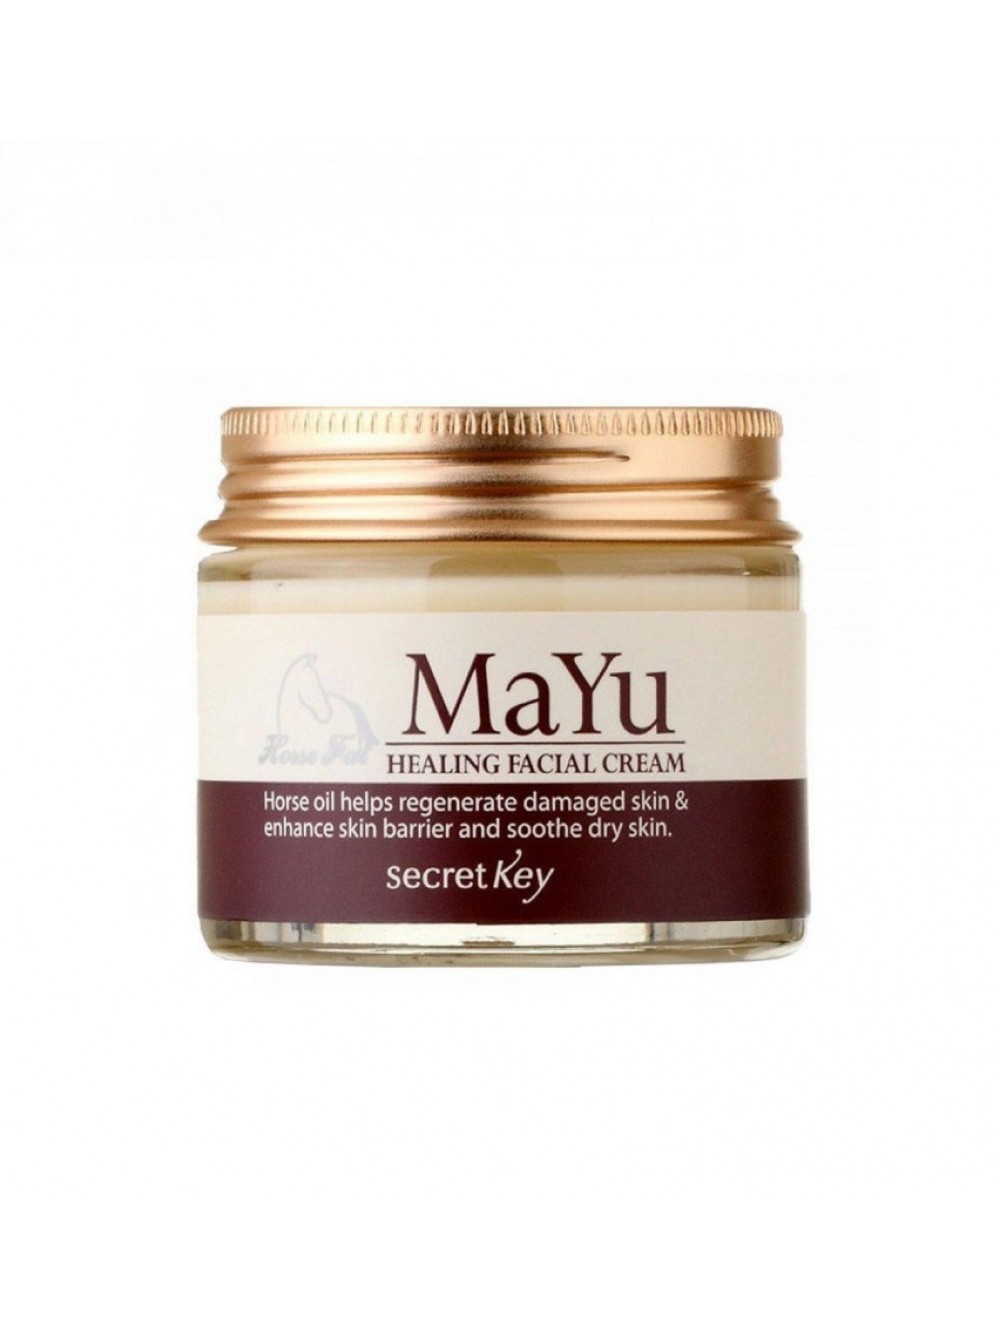 Купить крем 70. Secret Key крем для лица питательный Mayu Healing facial Cream 70гр.